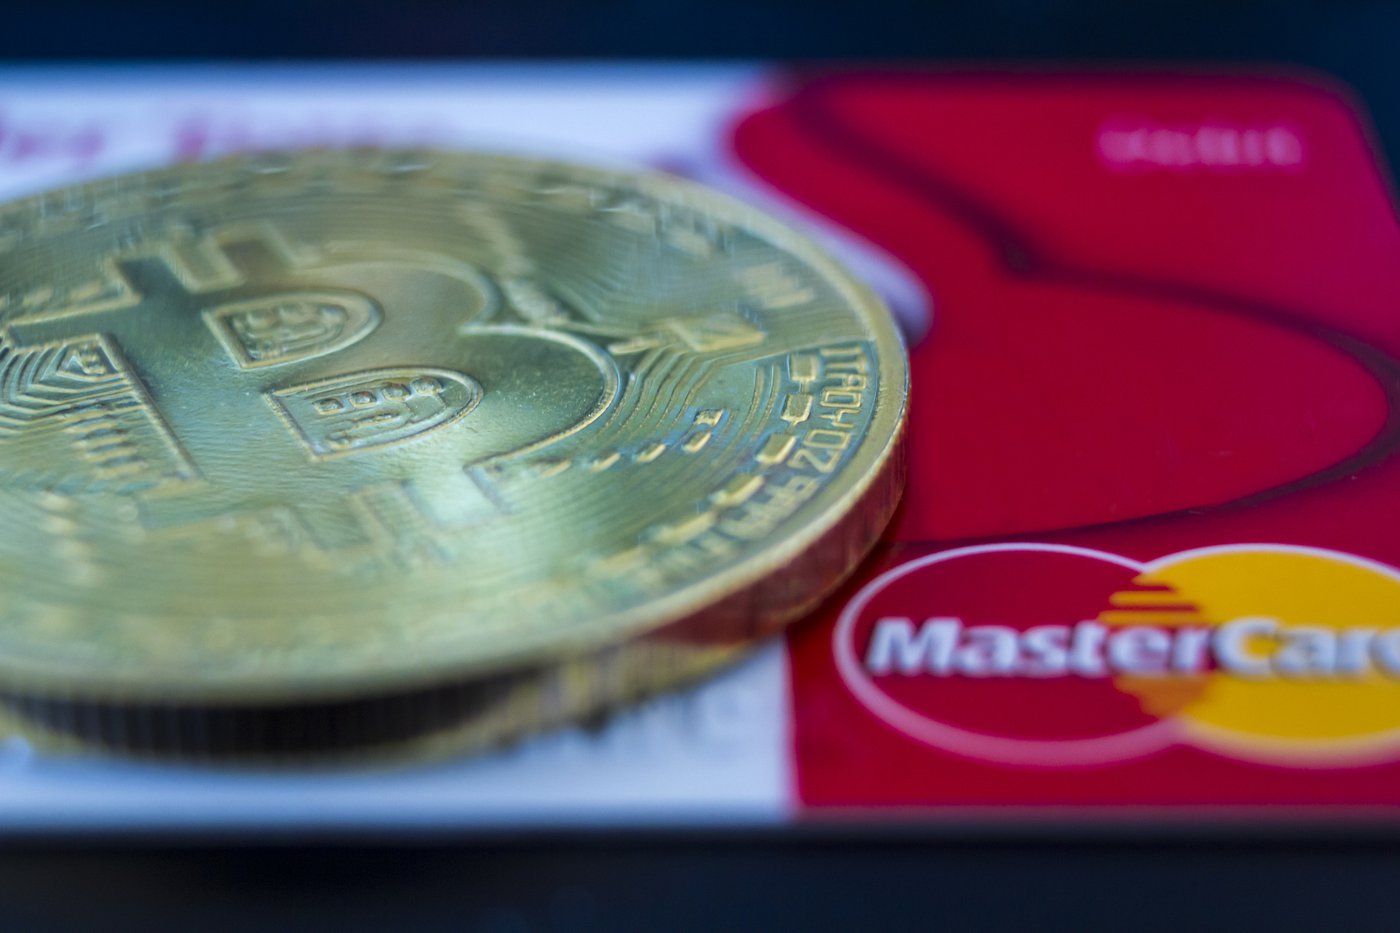 Mastercard brengt mogelijkheden voor handel en bewaring crypto naar banken